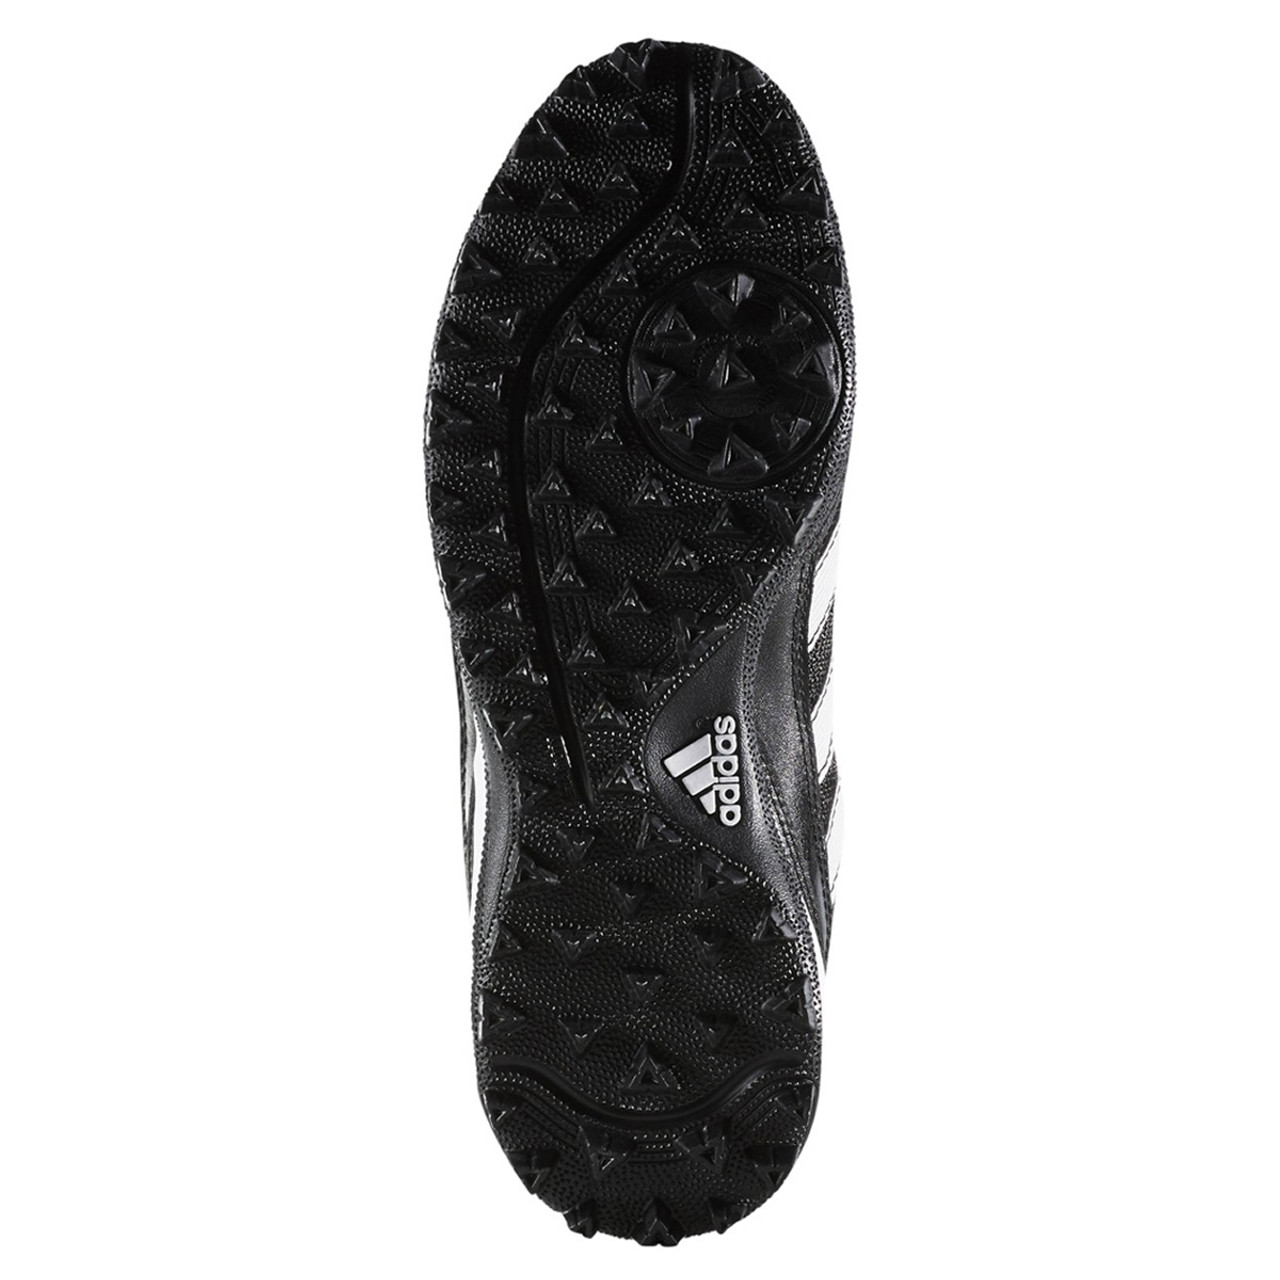 adidas turf hog field shoes